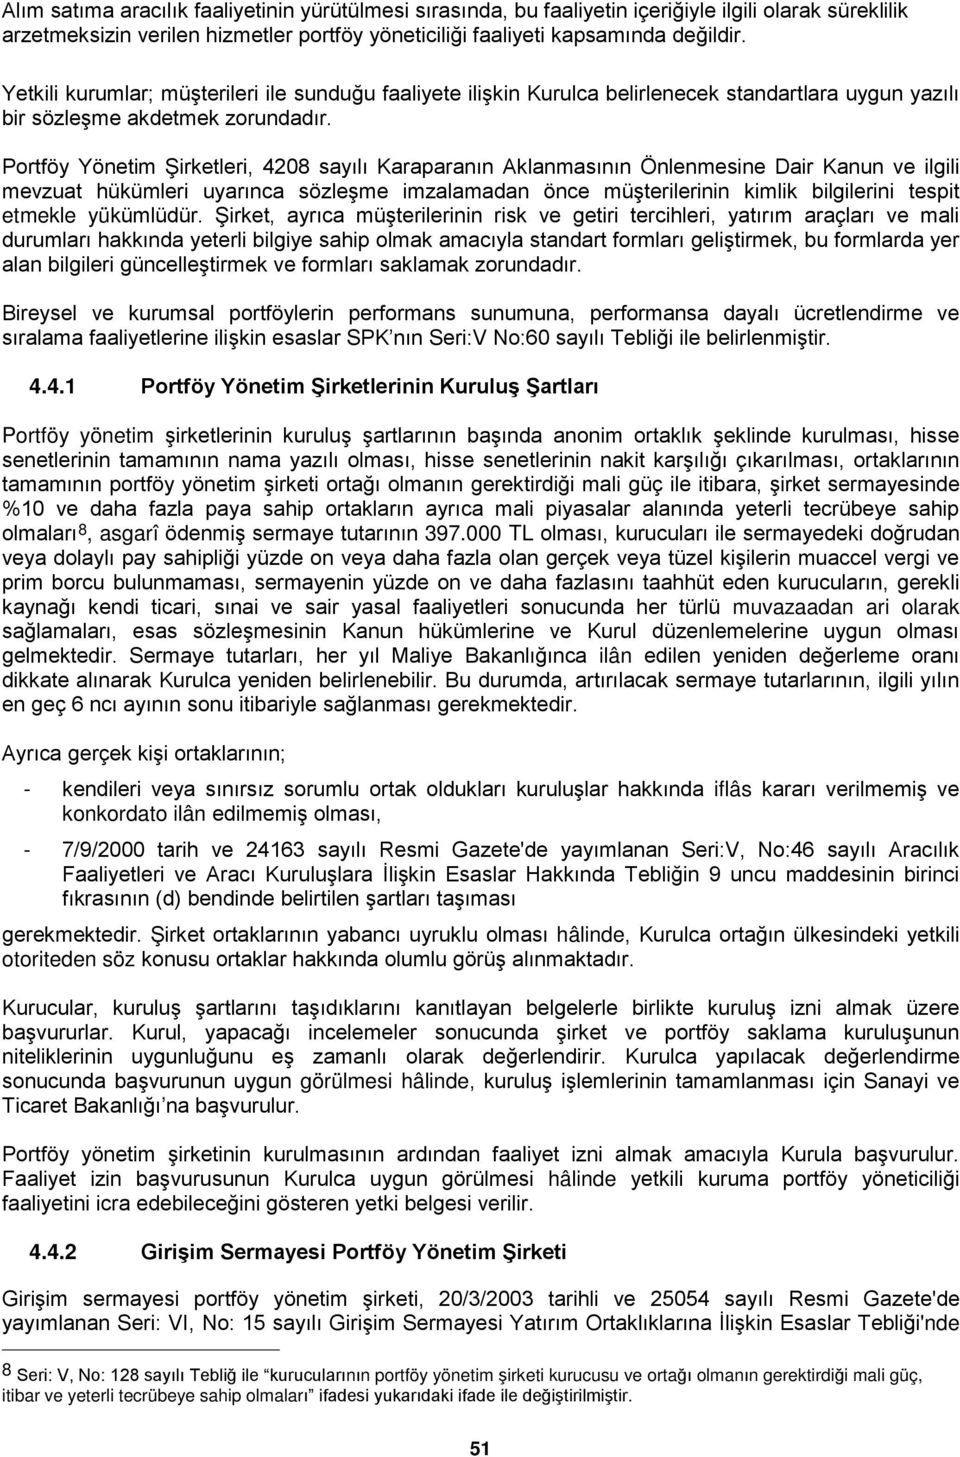 Portföy Yönetim Şirketleri, 4208 sayılı Karaparanın Aklanmasının Önlenmesine Dair Kanun ve ilgili mevzuat hükümleri uyarınca sözleşme imzalamadan önce müşterilerinin kimlik bilgilerini tespit etmekle